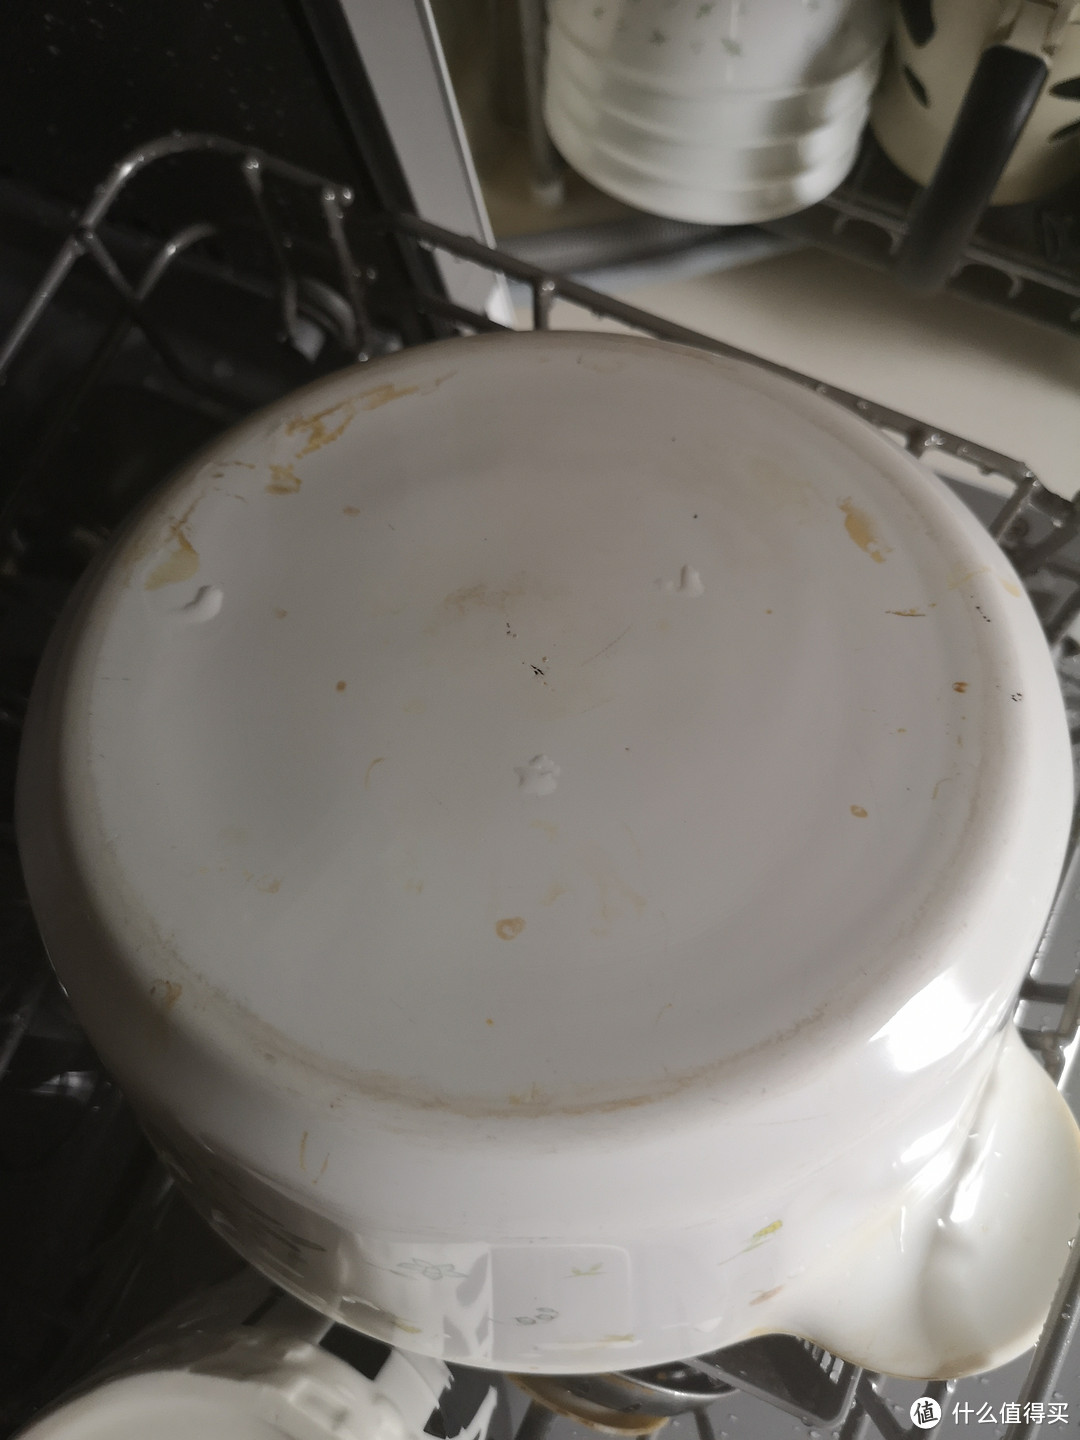 取出锅底还是很多污渍，除了磨损痕迹内的污渍还有一些附着在表面的污渍没有洗掉